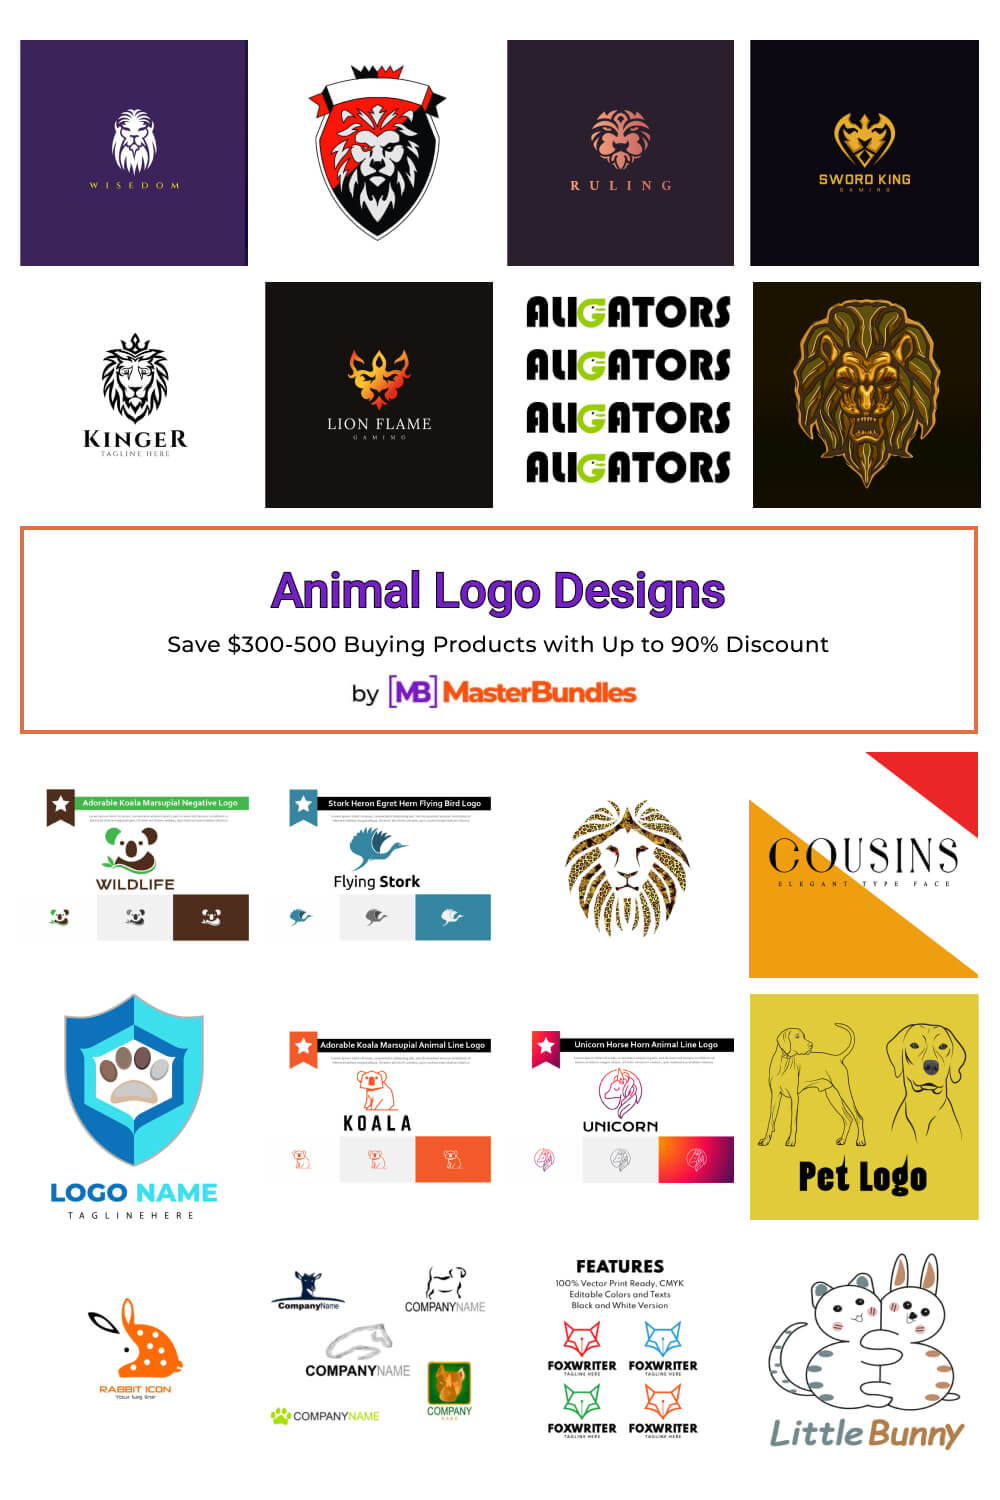 animal logo designs pinterest image.